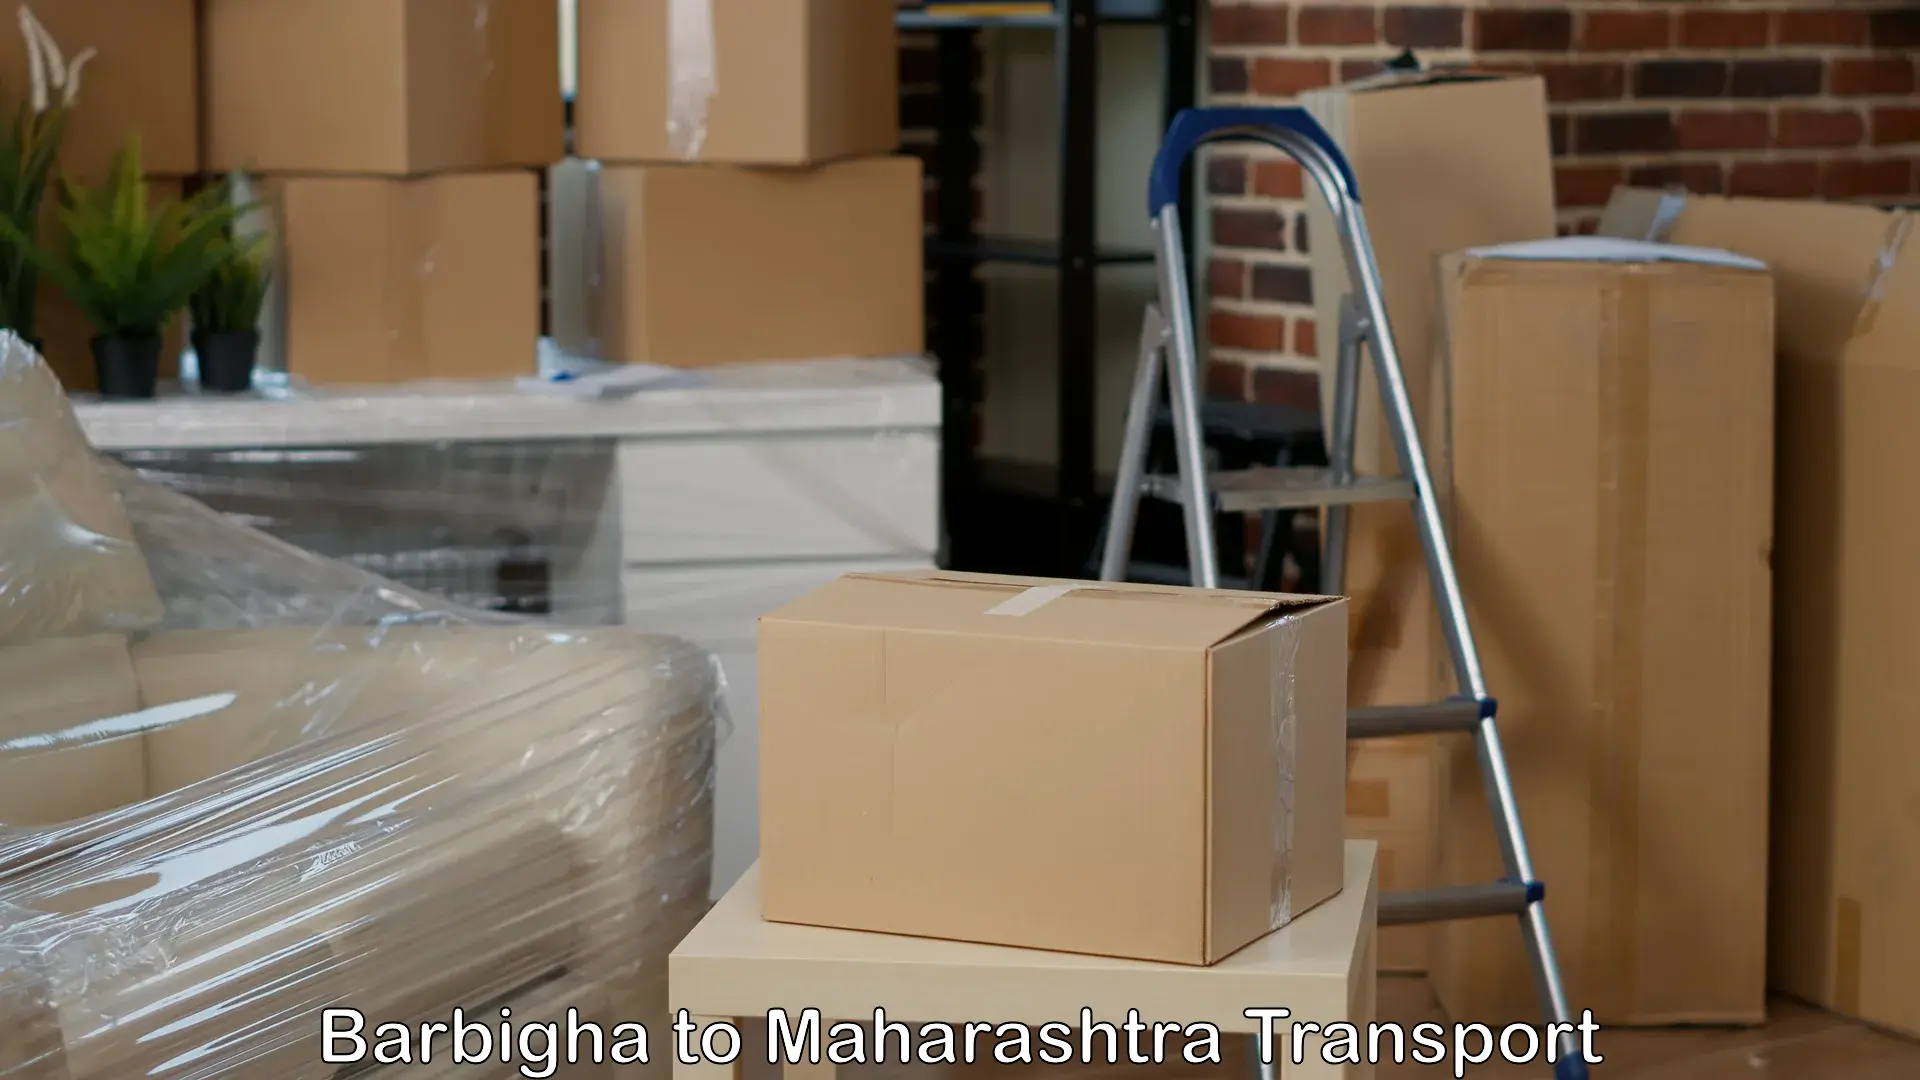 Shipping partner Barbigha to Nandurbar